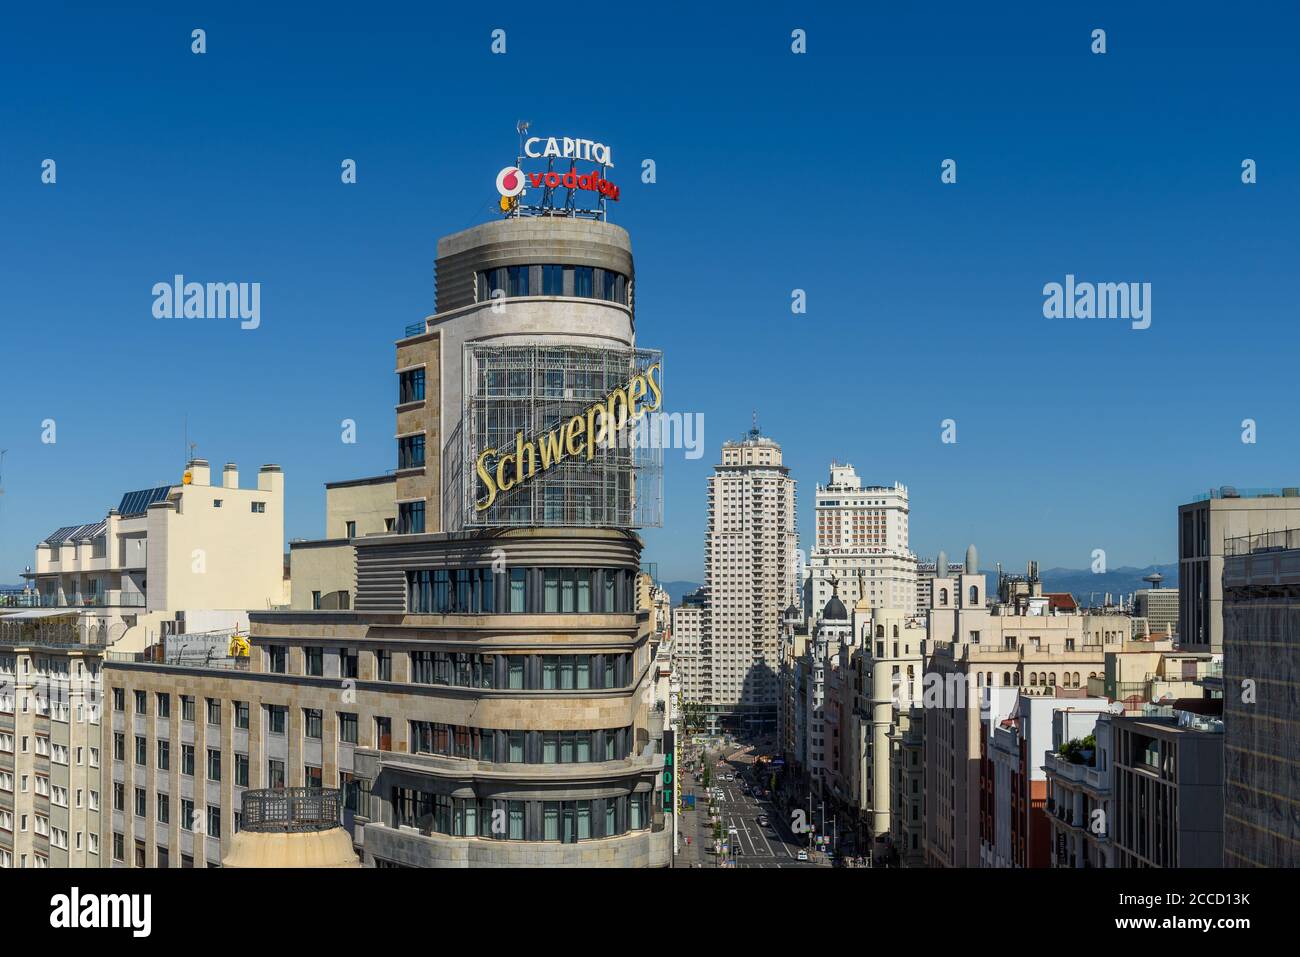 Madrid, Espagne - 15 août 2020 : paysage urbain de la place Callao et de la Gran via. Vue aérienne Banque D'Images